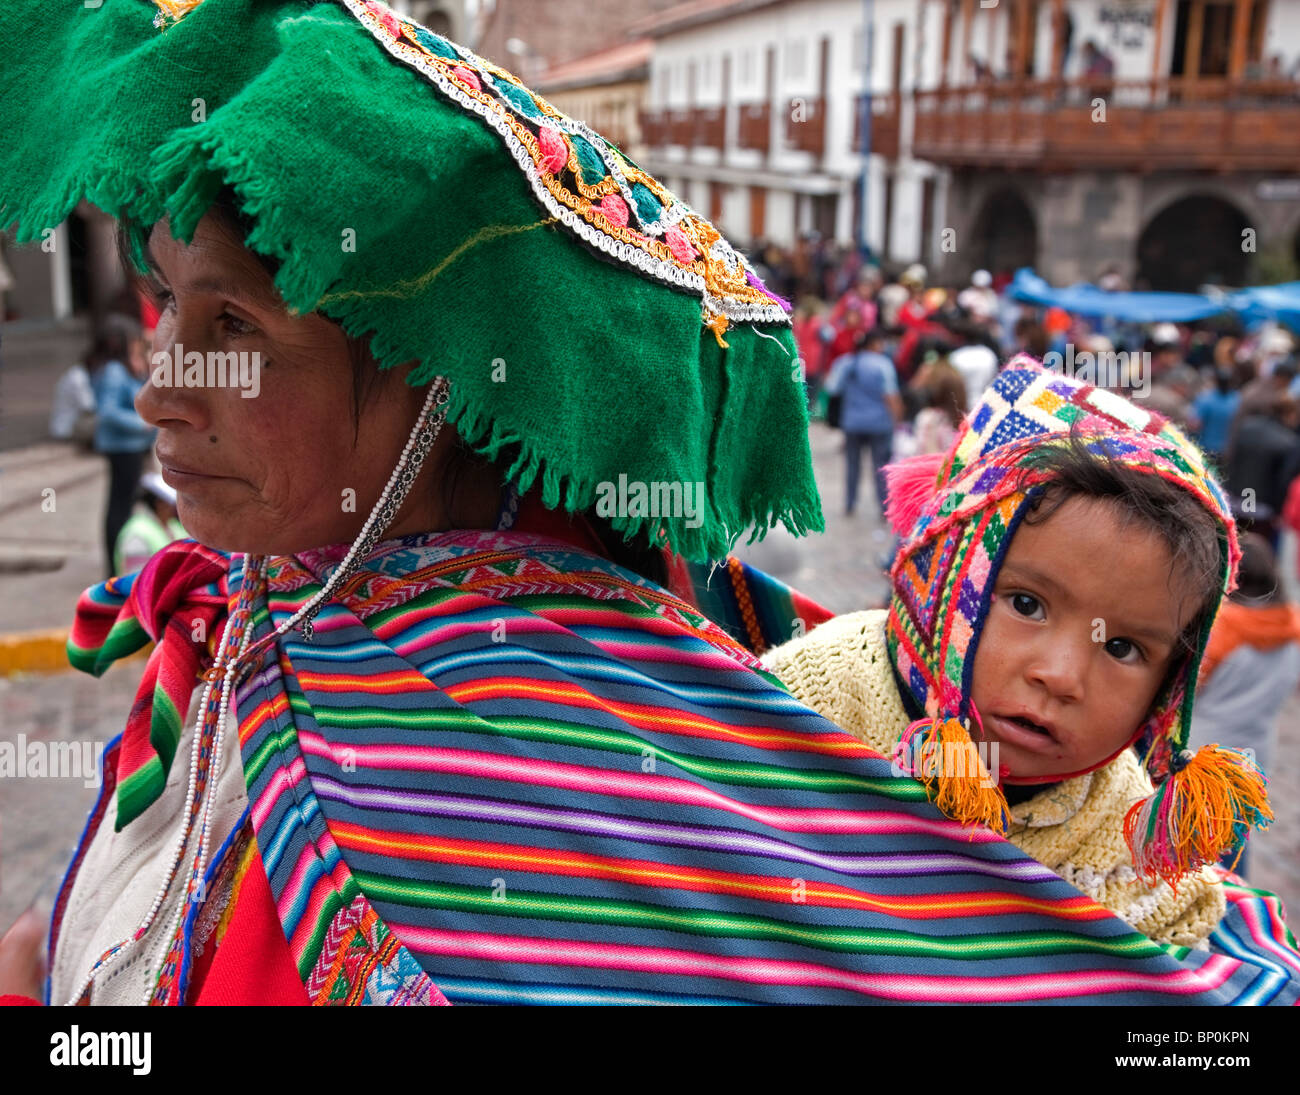 Peru, eine Frau und Kind am Santuranticuy Markt. Dieser Markt findet jedes Jahr in den wichtigsten Platz in Cusco am Heiligabend statt. Stockfoto